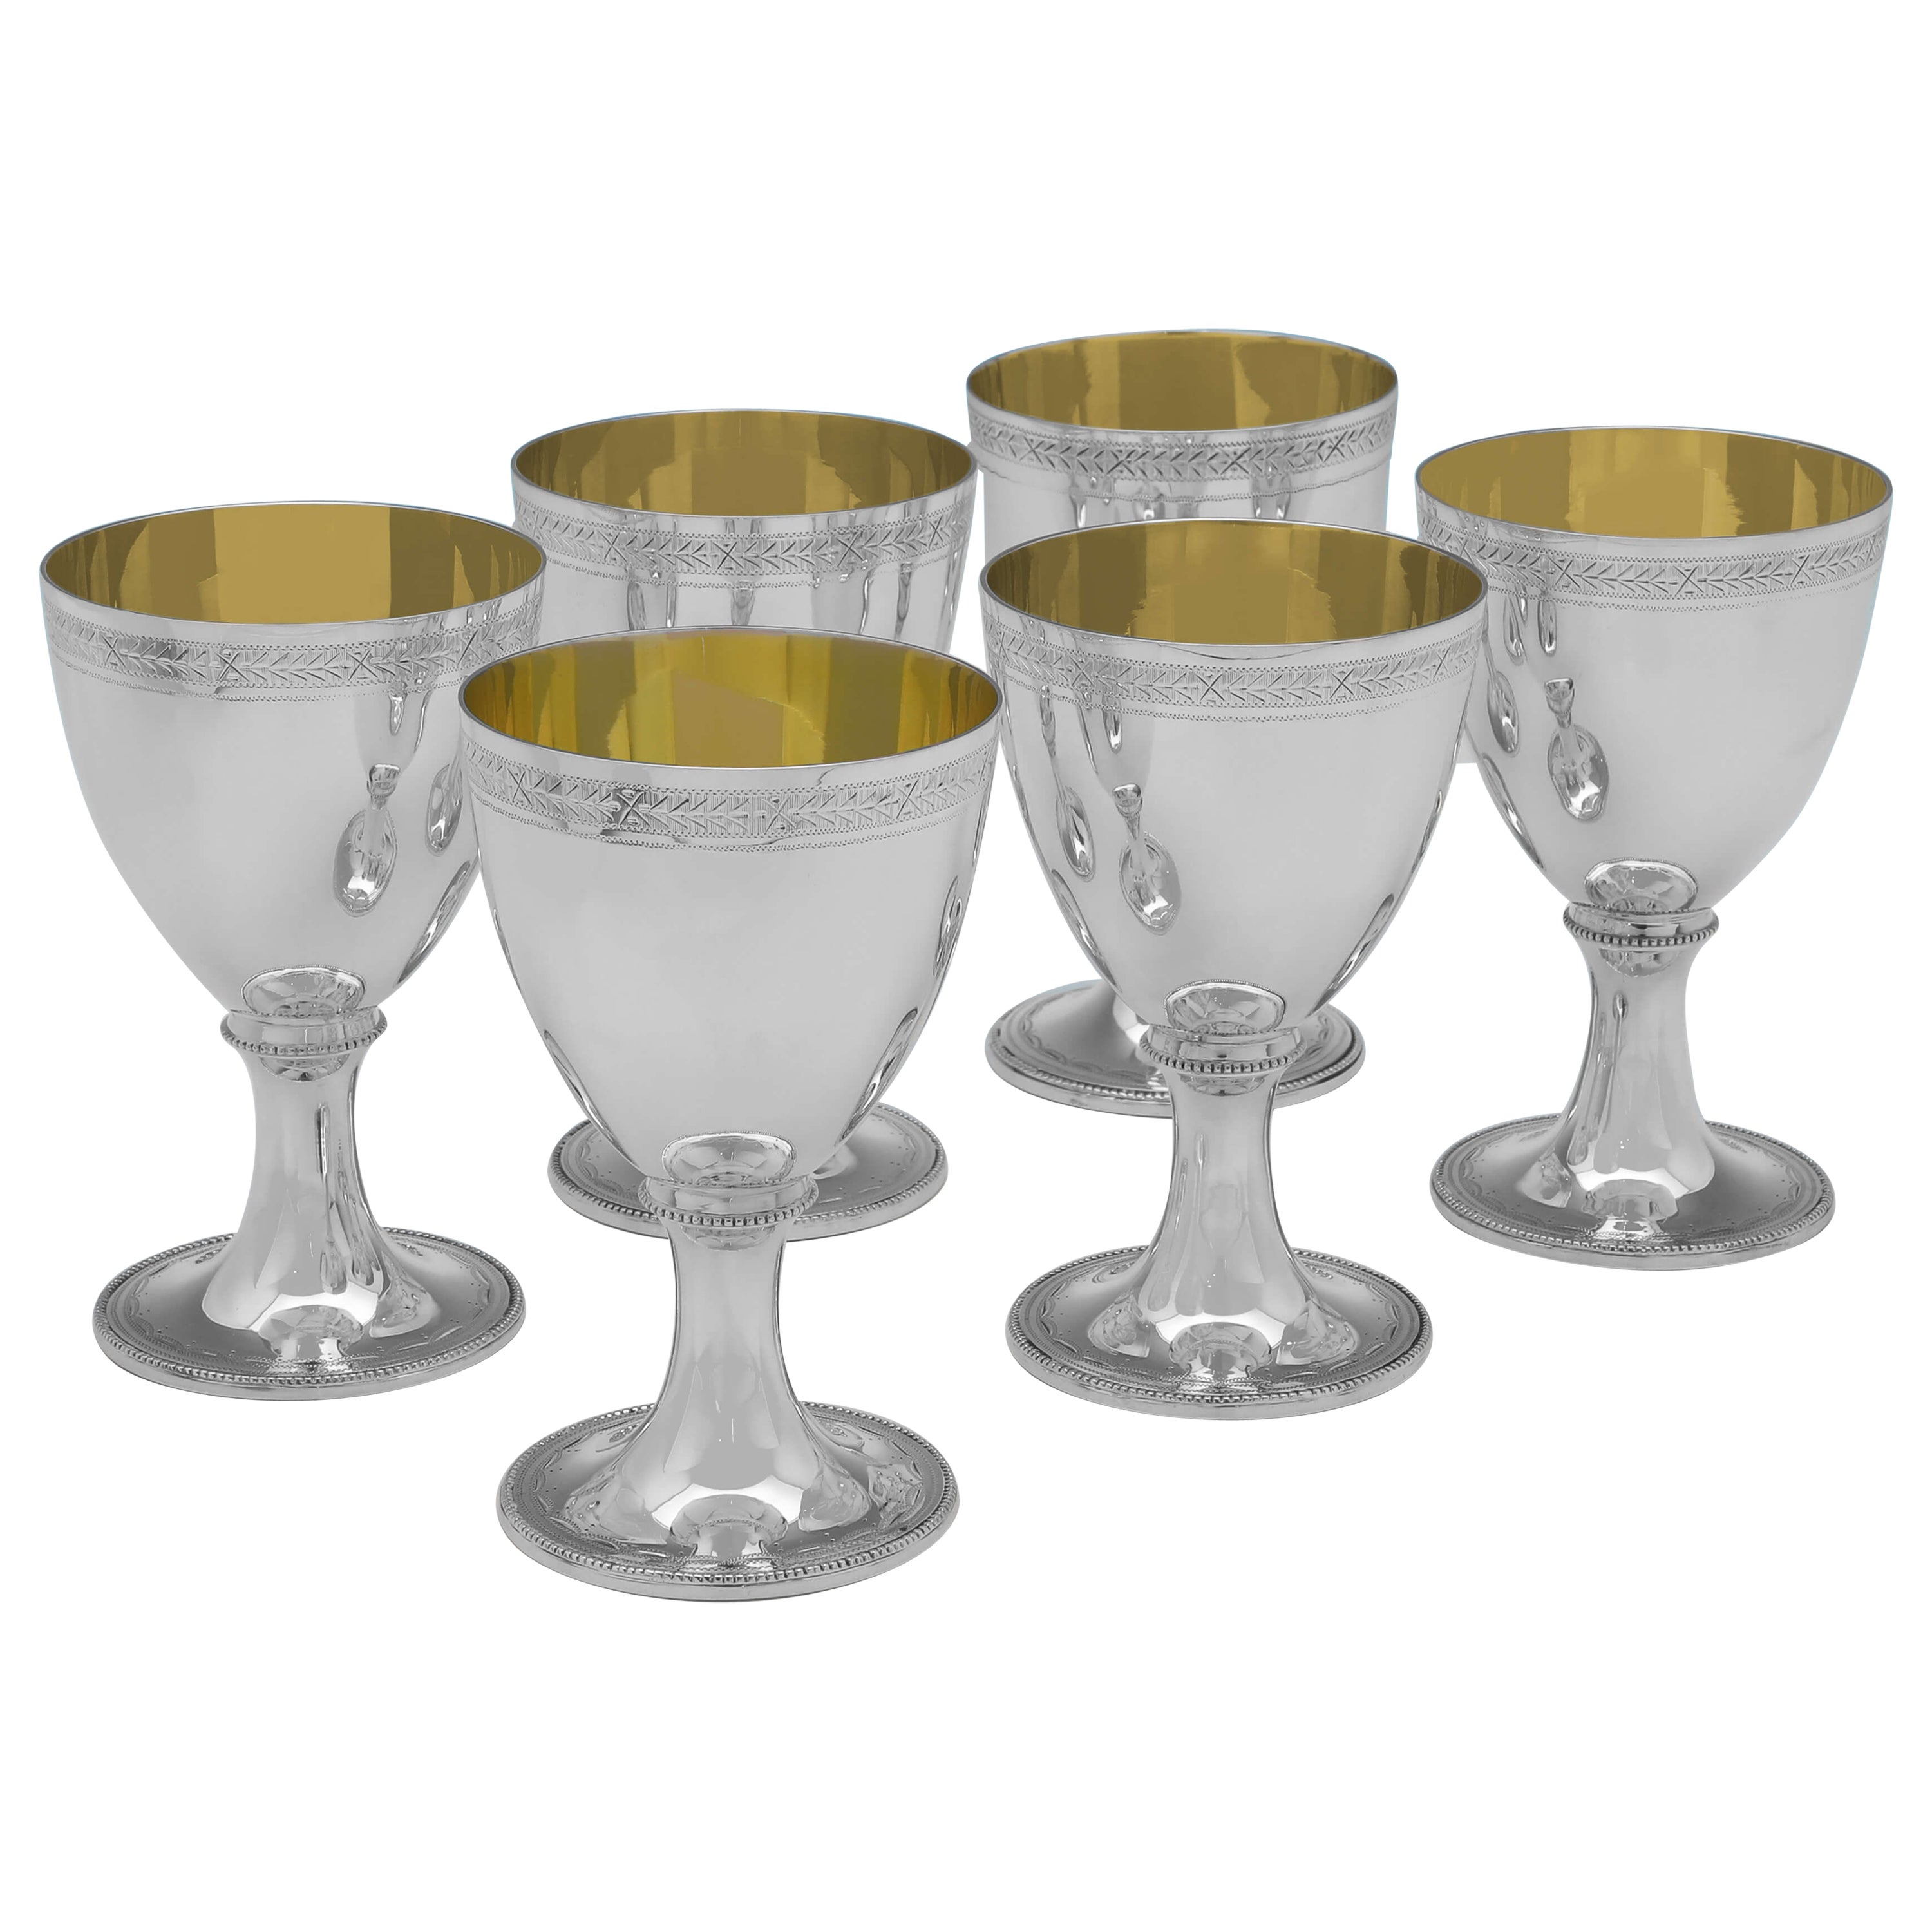 Neoclassical Design Set of 6 Sterling Silver Goblets - C. J. Vander 2000